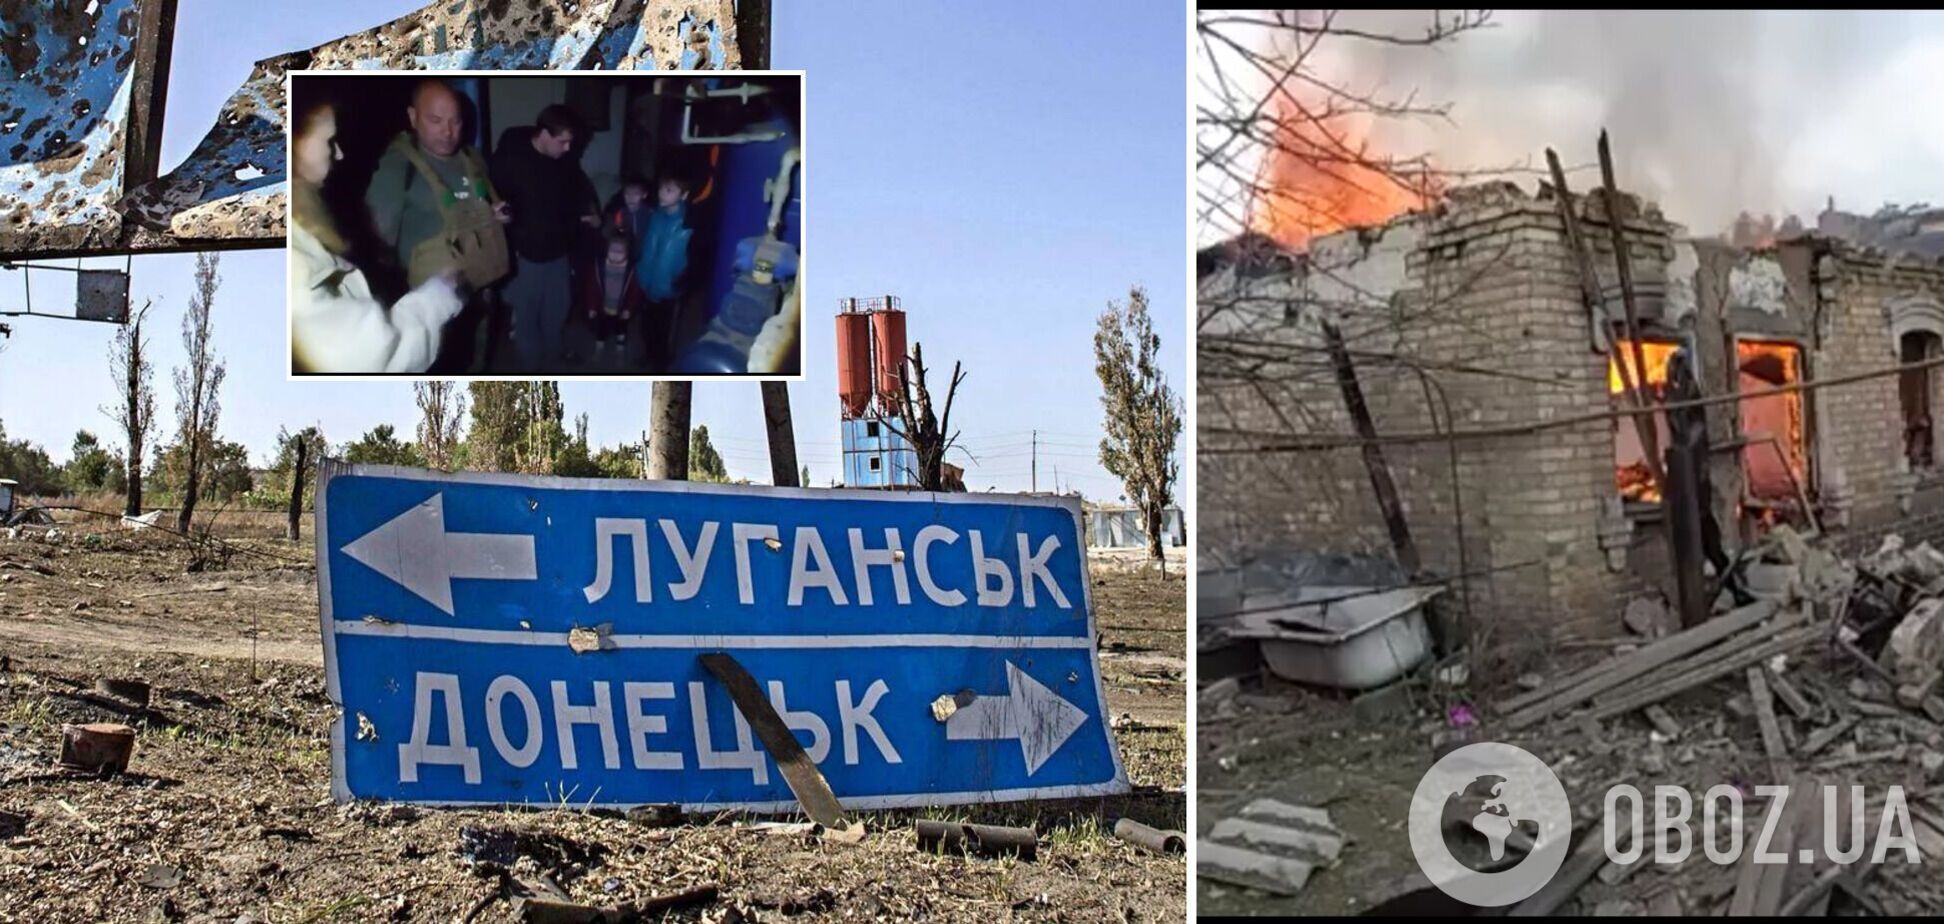 Весь поселок охвачен огнем: украинские военные показали ужасные кадры эвакуации гражданских c Донбасса. Видео